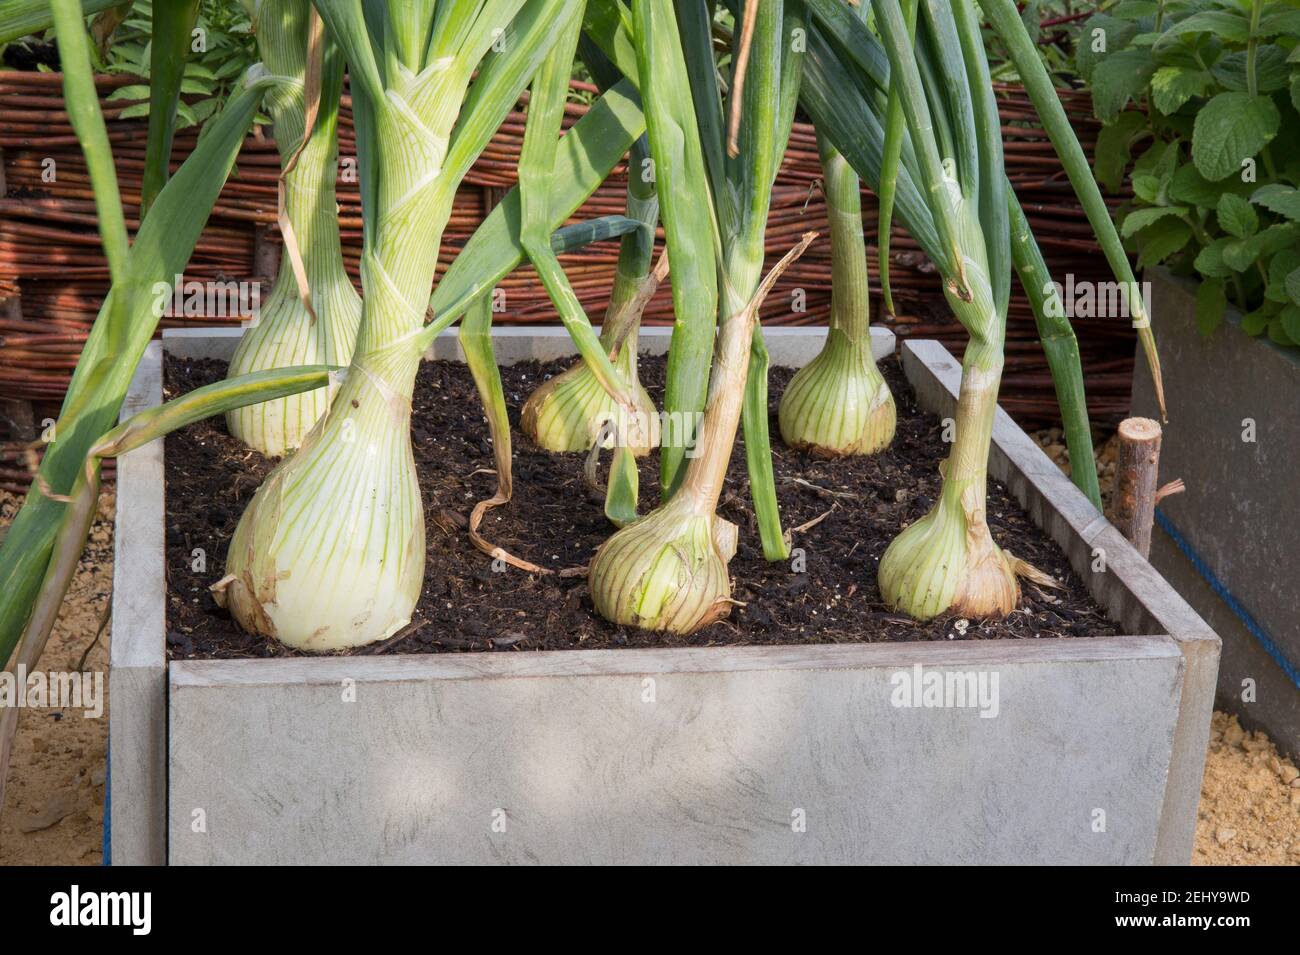 RHS Wachsen Sie Ihr eigenes mit der Raymond Blanc Gardening School - ein kleiner, platzsparender Bio-Gemüsegarten mit Zwiebeln Gewachsen in alten Schiefer Fliesen gemacht ra Stockfoto